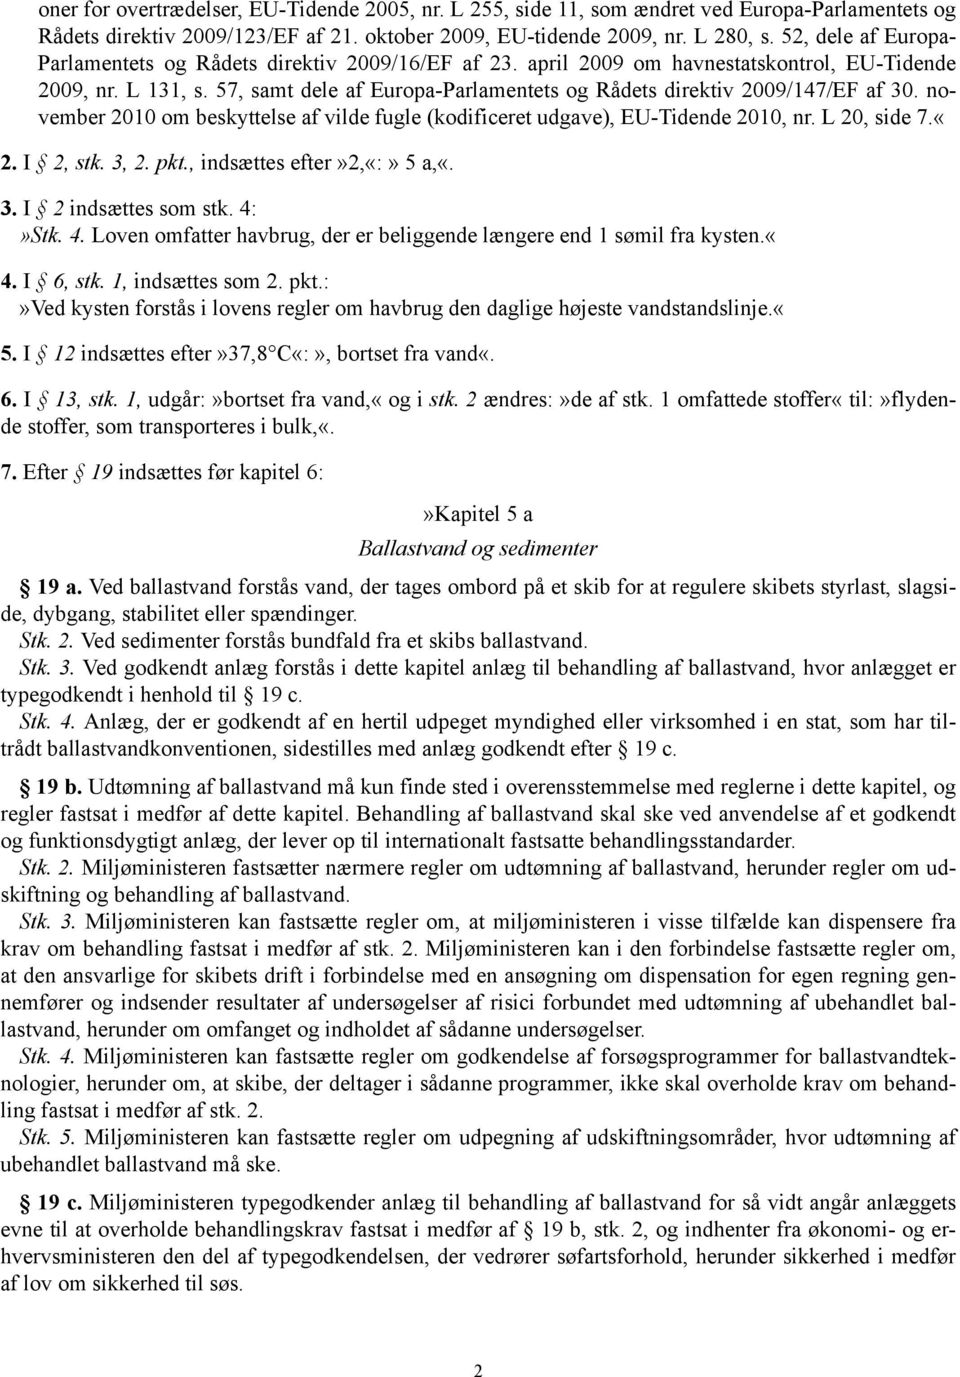 57, samt dele af Europa-Parlamentets og Rådets direktiv 2009/147/EF af 30. november 2010 om beskyttelse af vilde fugle (kodificeret udgave), EU-Tidende 2010, nr. L 20, side 7.«2. I 2, stk. 3, 2. pkt.